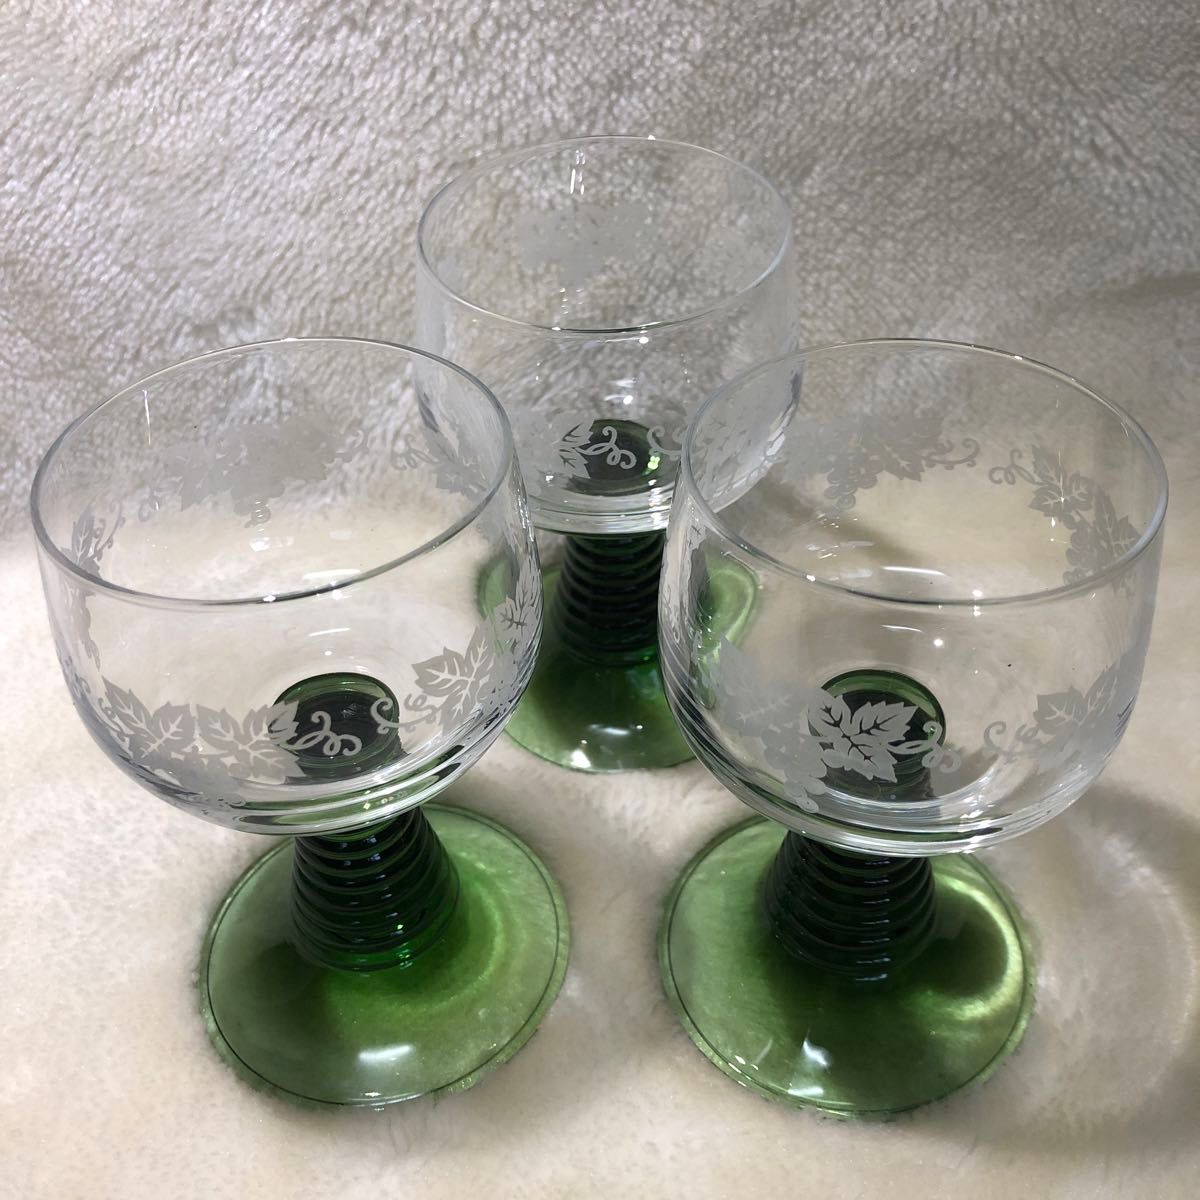 ワイングラス3個　ガラス工芸品。透明ガラスにブドウの絵柄を施術。スタンド部はグリーンで土台の安定感のある逸品。